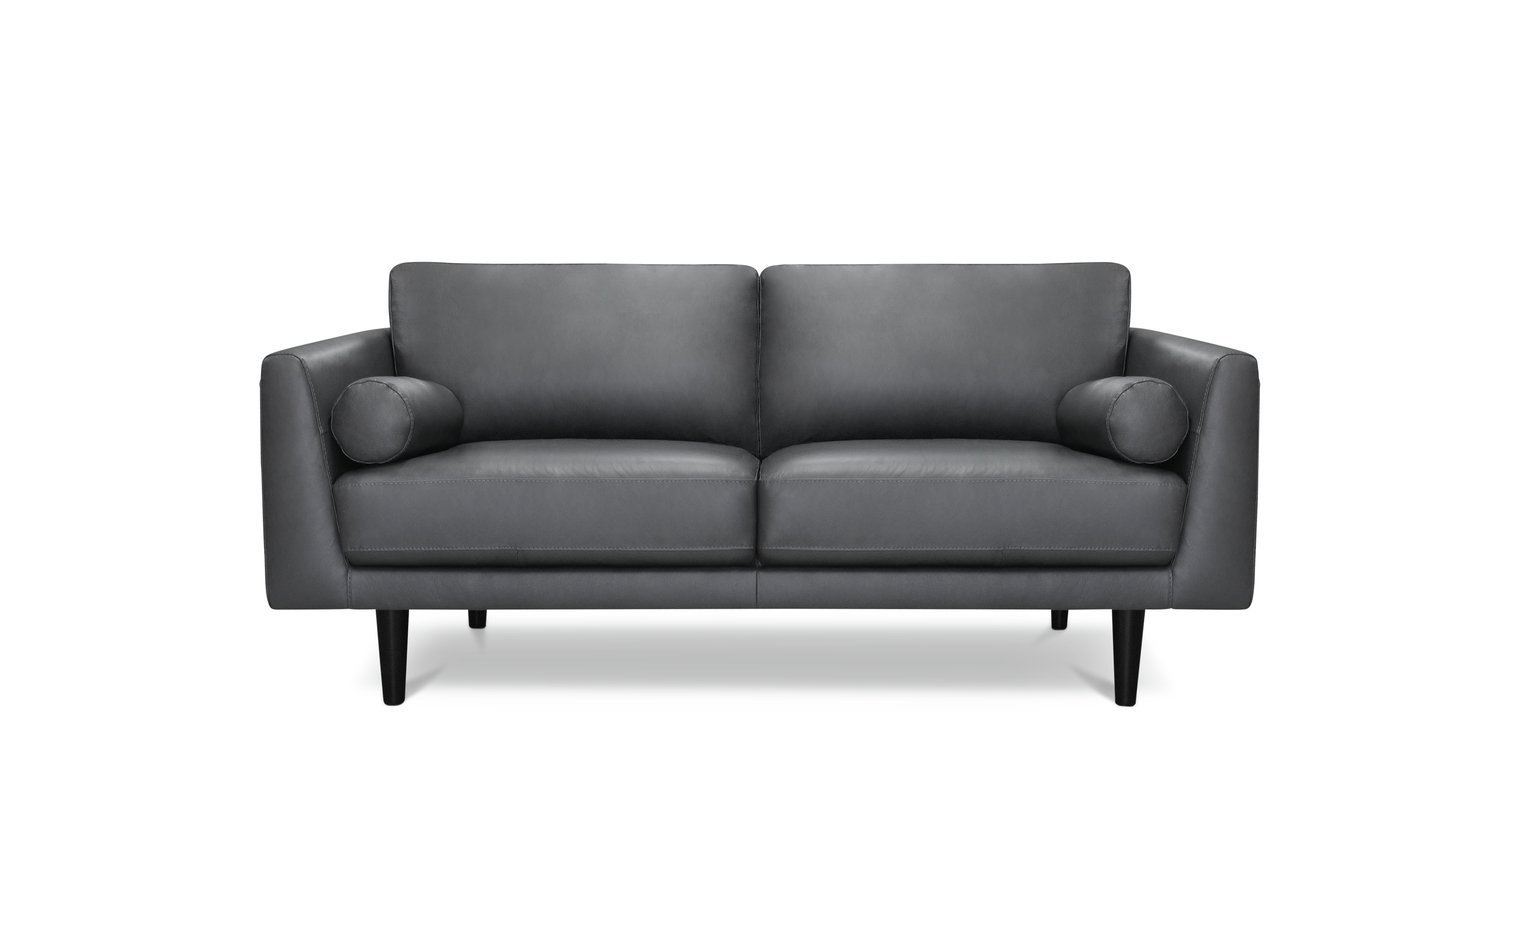 Argos Home Jackson 3 Seater Leather Sofa Review